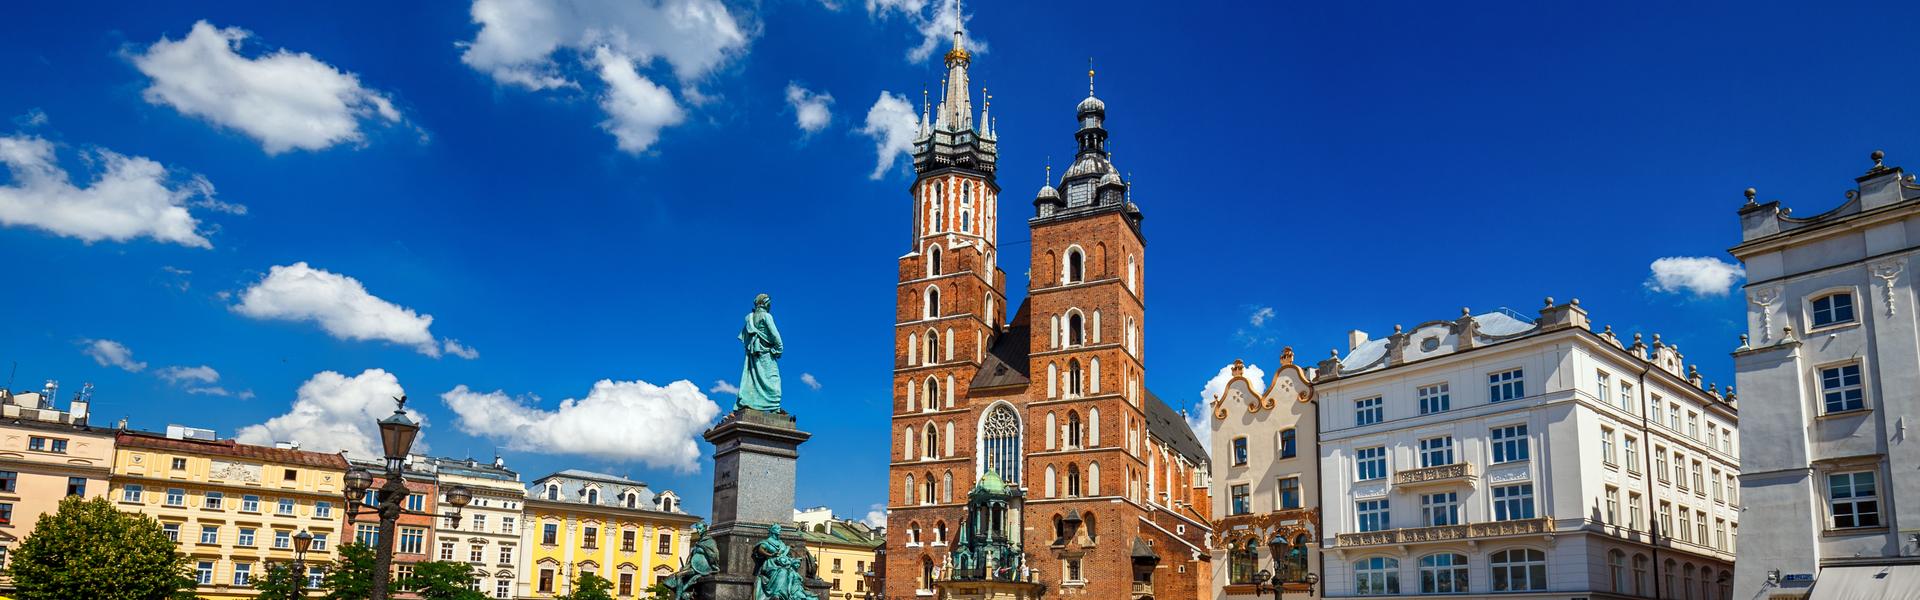 Bild: Kościół Mariacki – jeden z najwspanialszych zabytków Krakowa i przykład sztuki gotyckiej. 800 lat historii